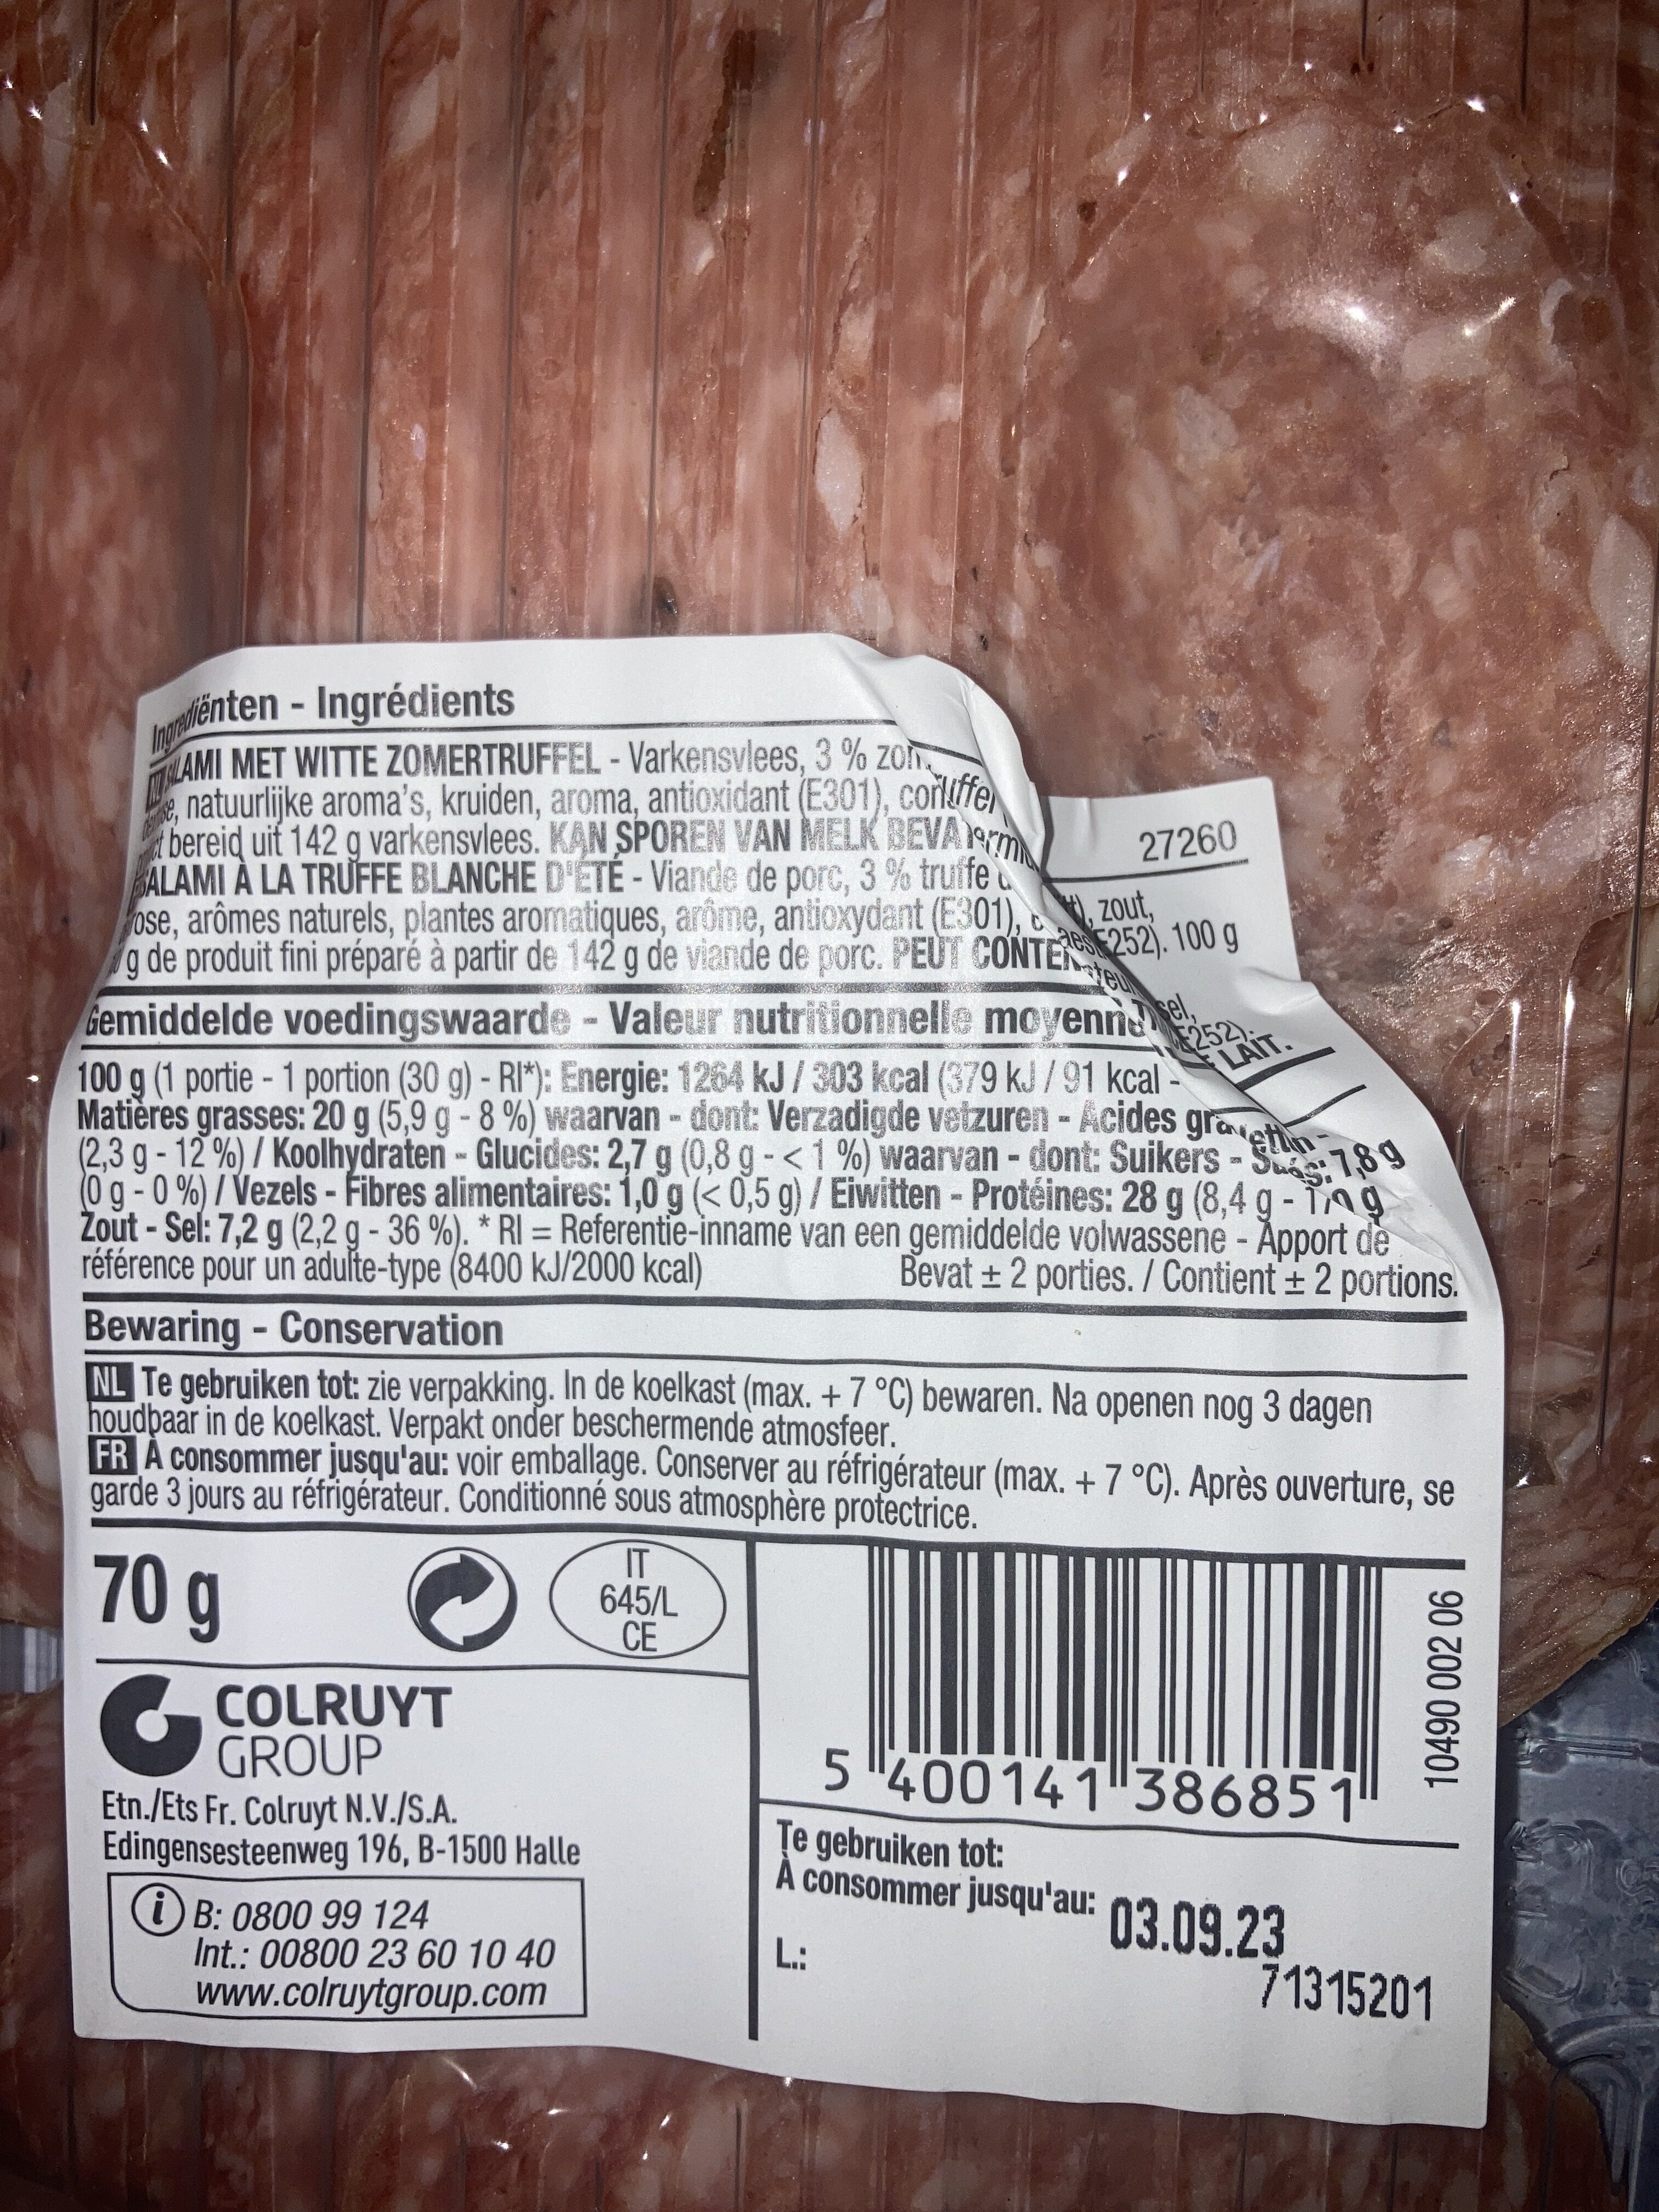 Salami a la truffe - Ingrediënten - fr